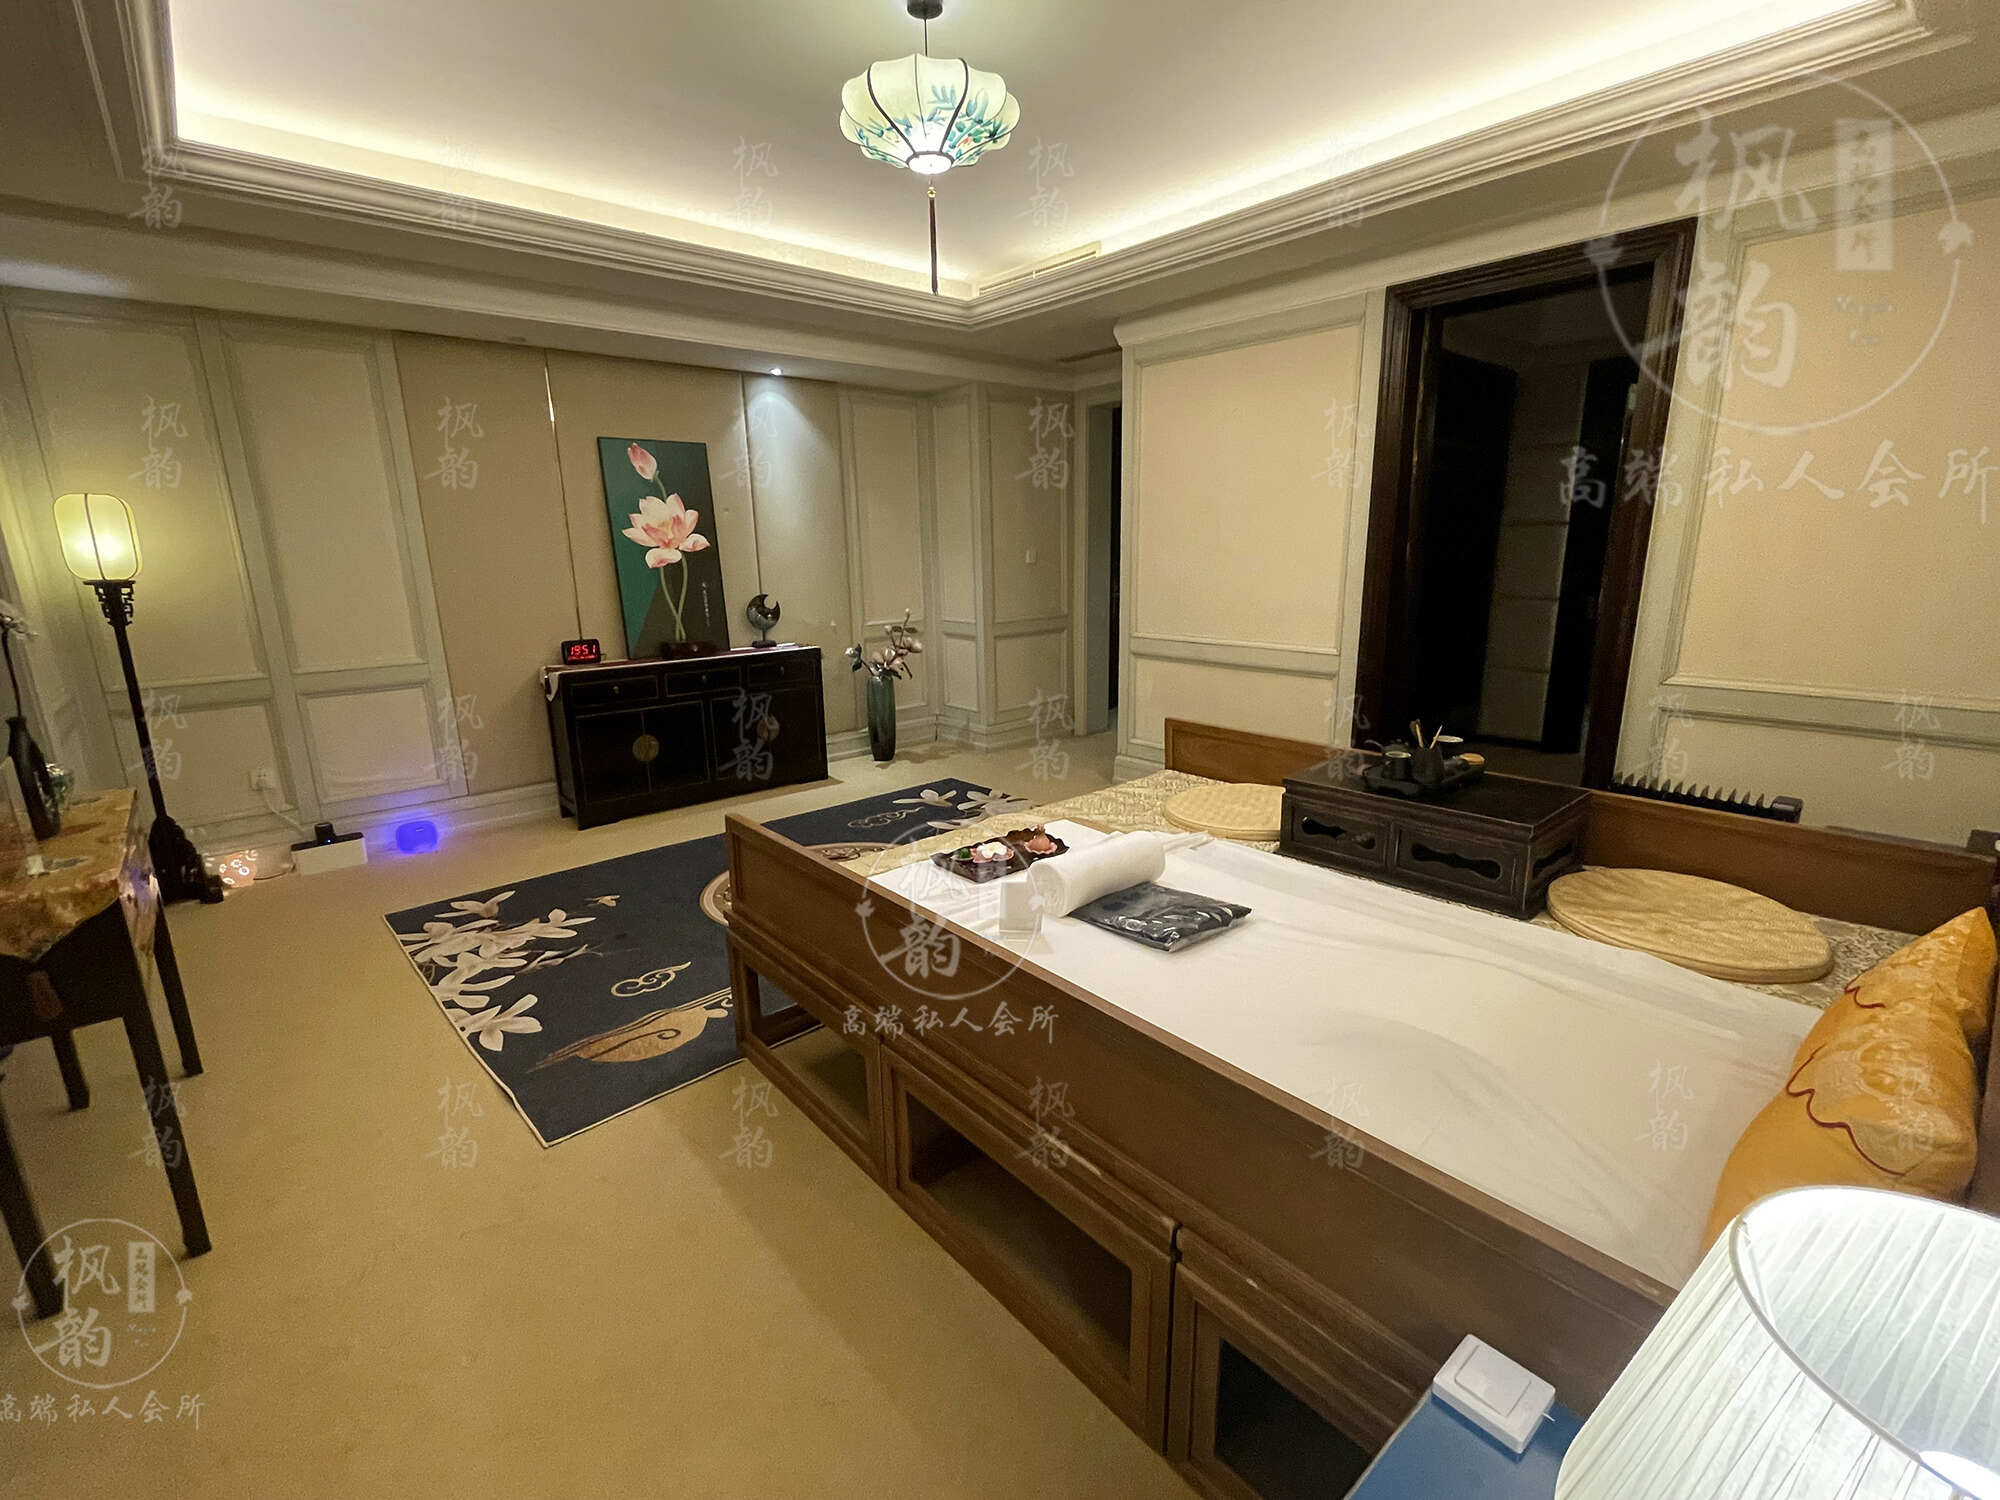 广州天津渔阳鼓楼人气优选沐足会馆房间也很干净，舒适的spa体验